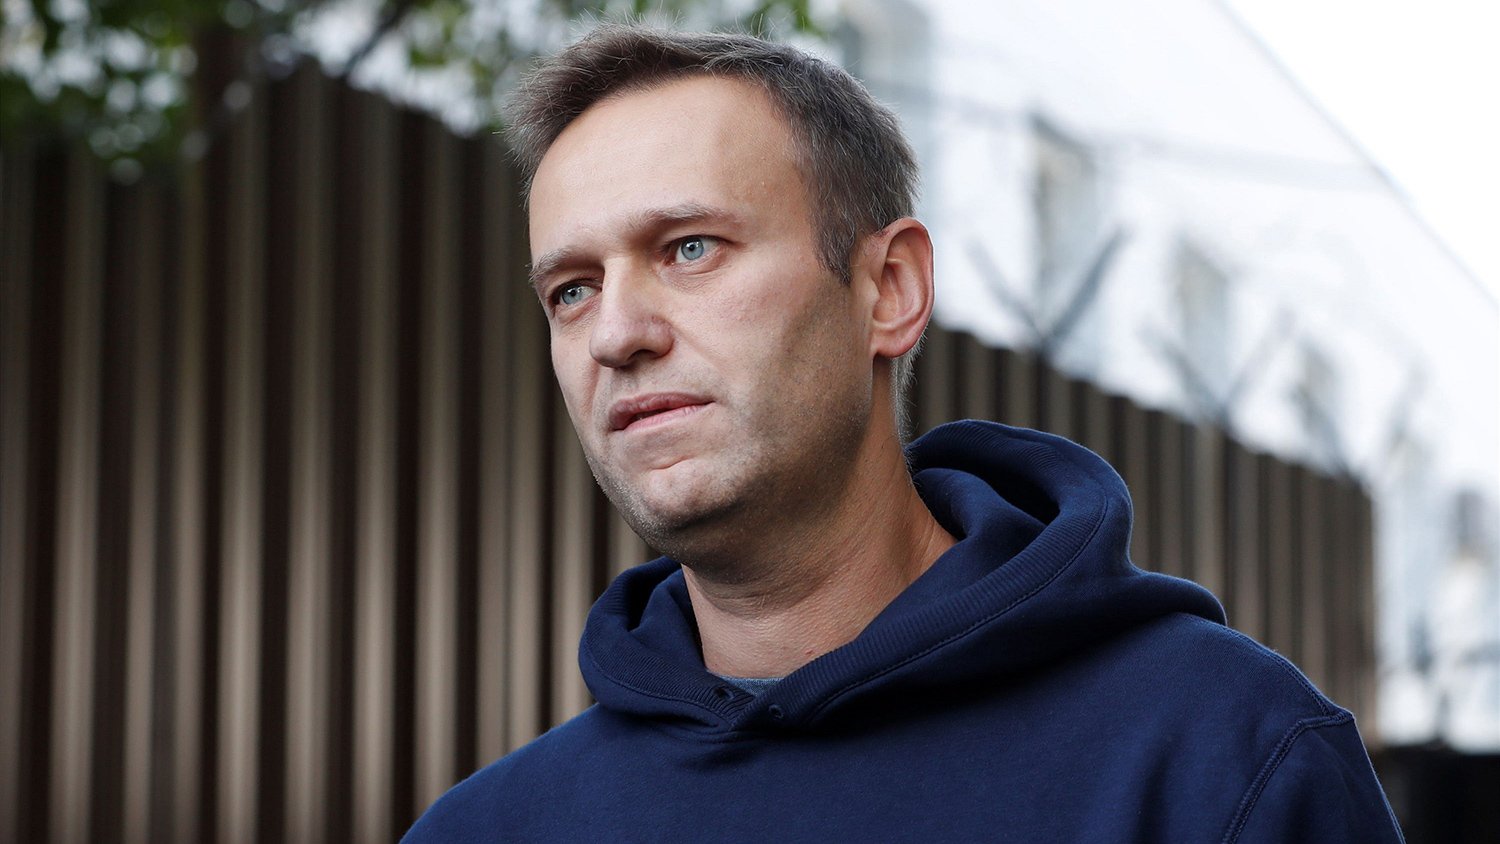 МЗС Росії погрожує Німеччині через Навального: що відбувається у відносинах двох країн